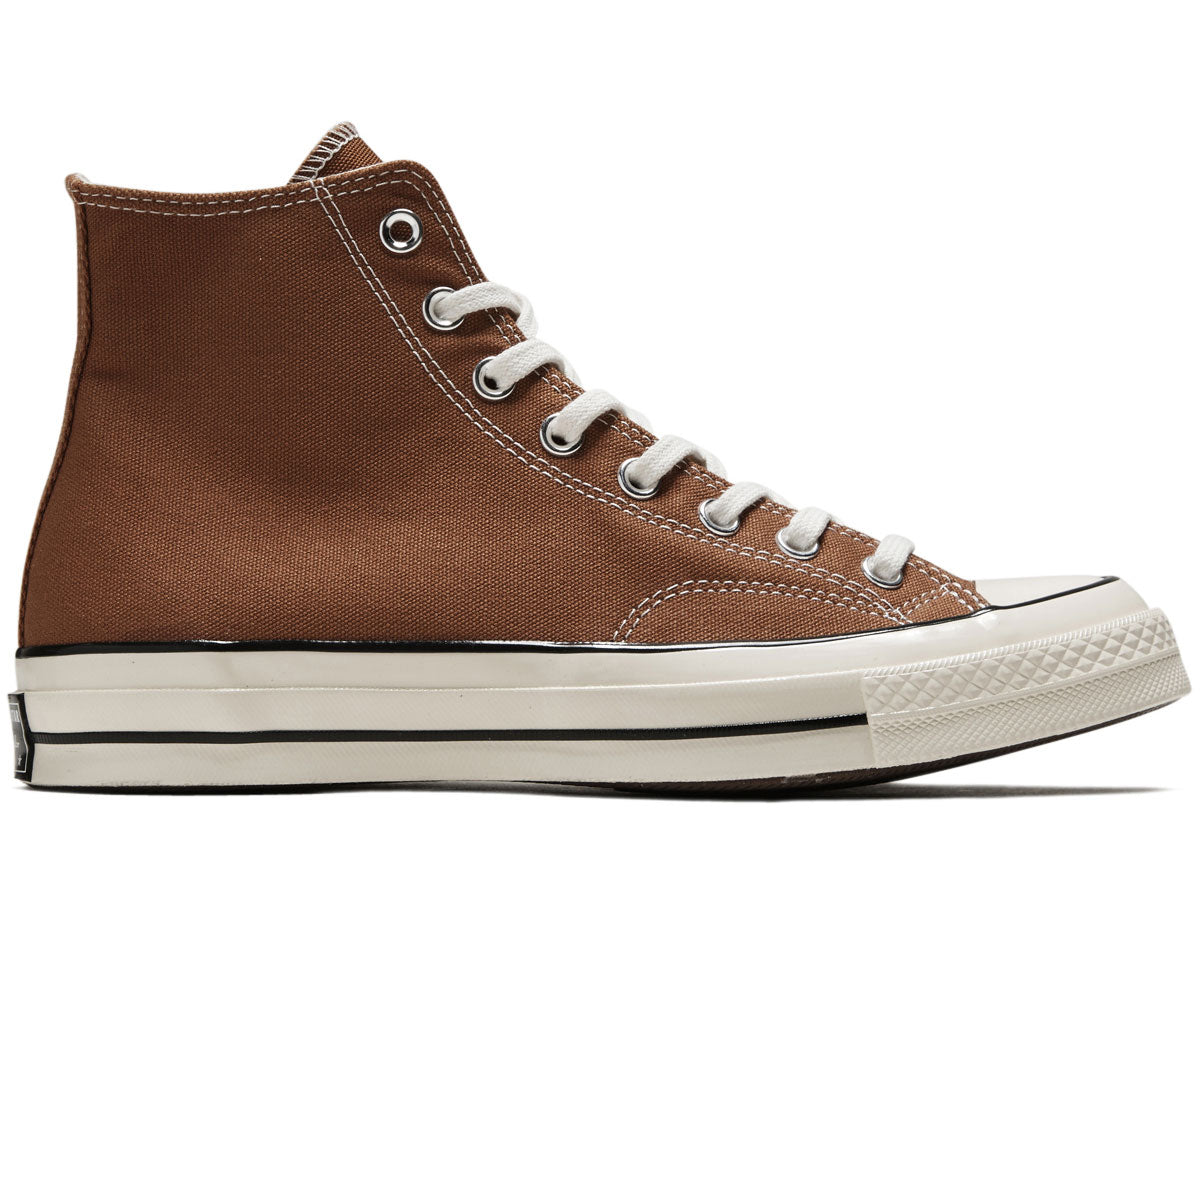 Converse Chuck 70 Hi Shoes - Tawny Owl/Egret/Black image 1